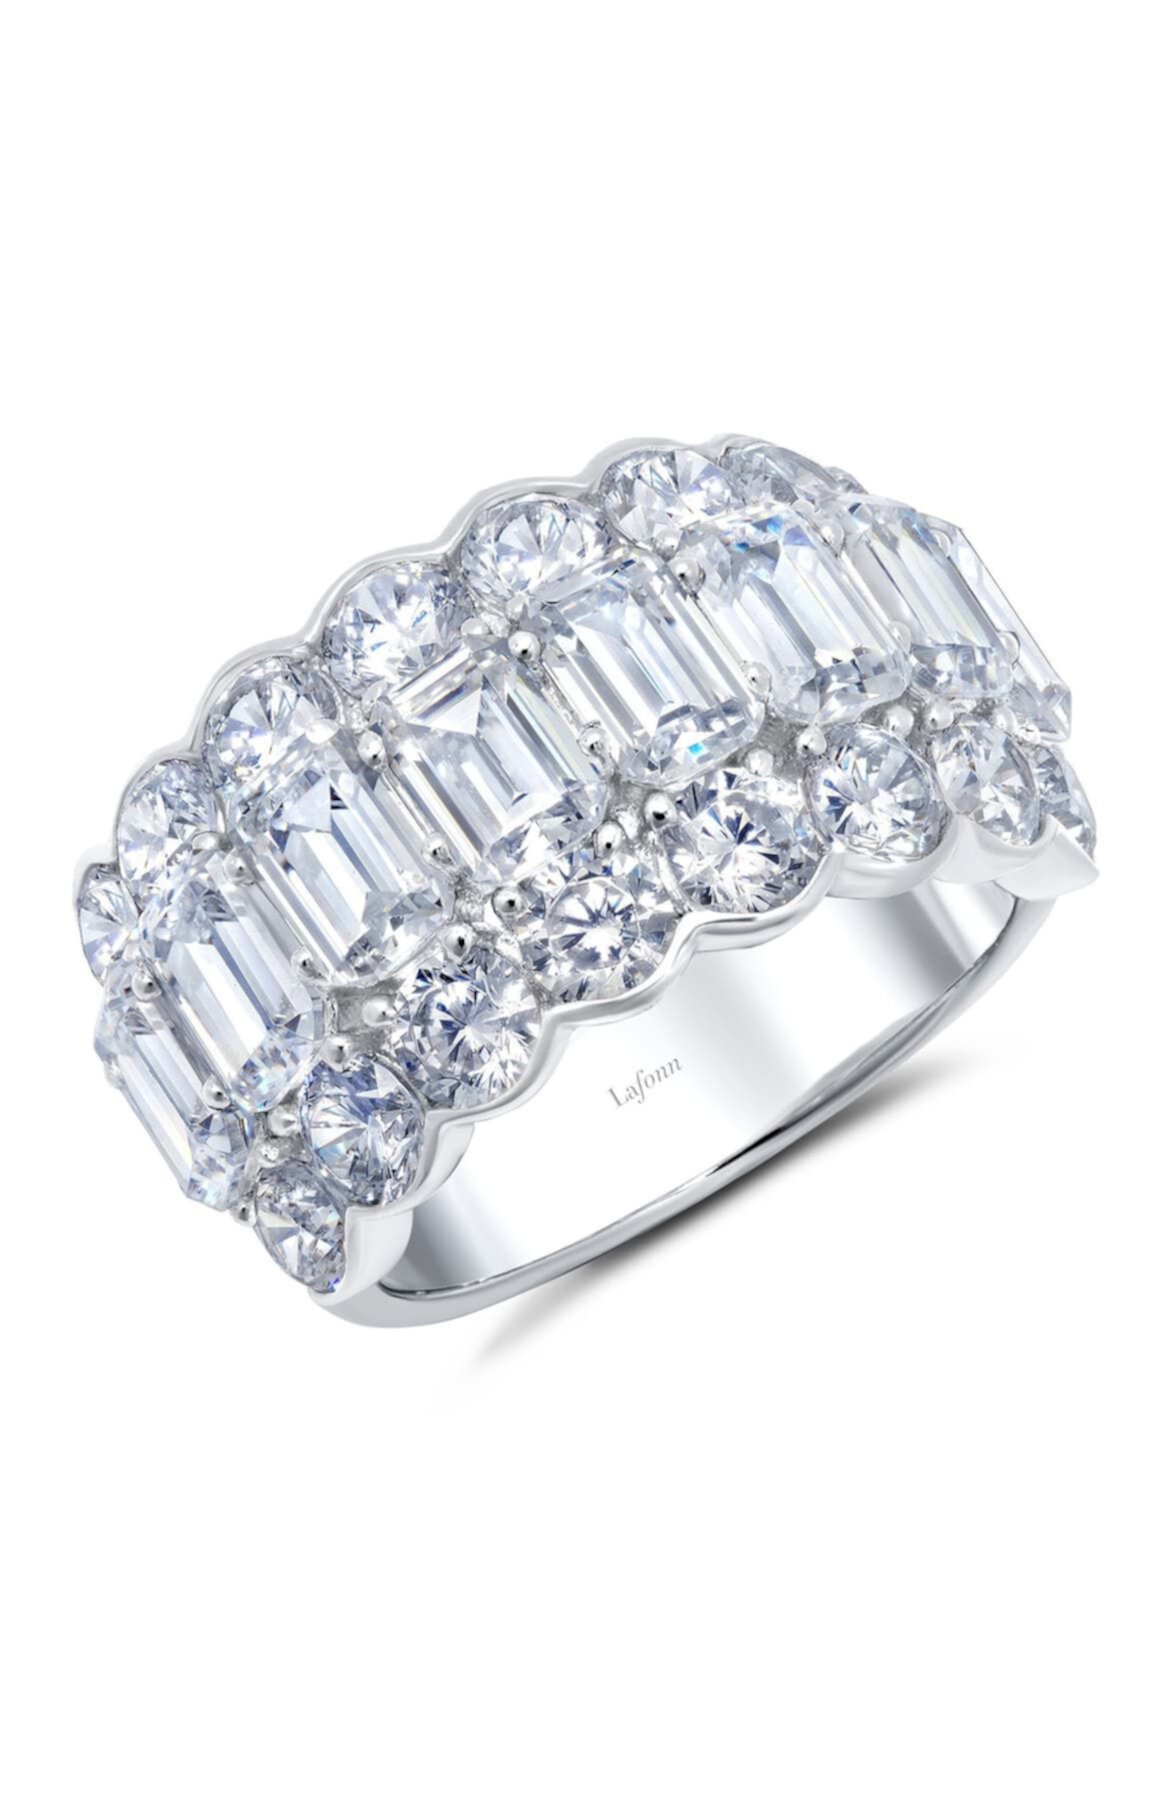 Сигарное кольцо из стерлингового серебра с платиновым покрытием и имитацией бриллианта огранки изумруд LaFonn